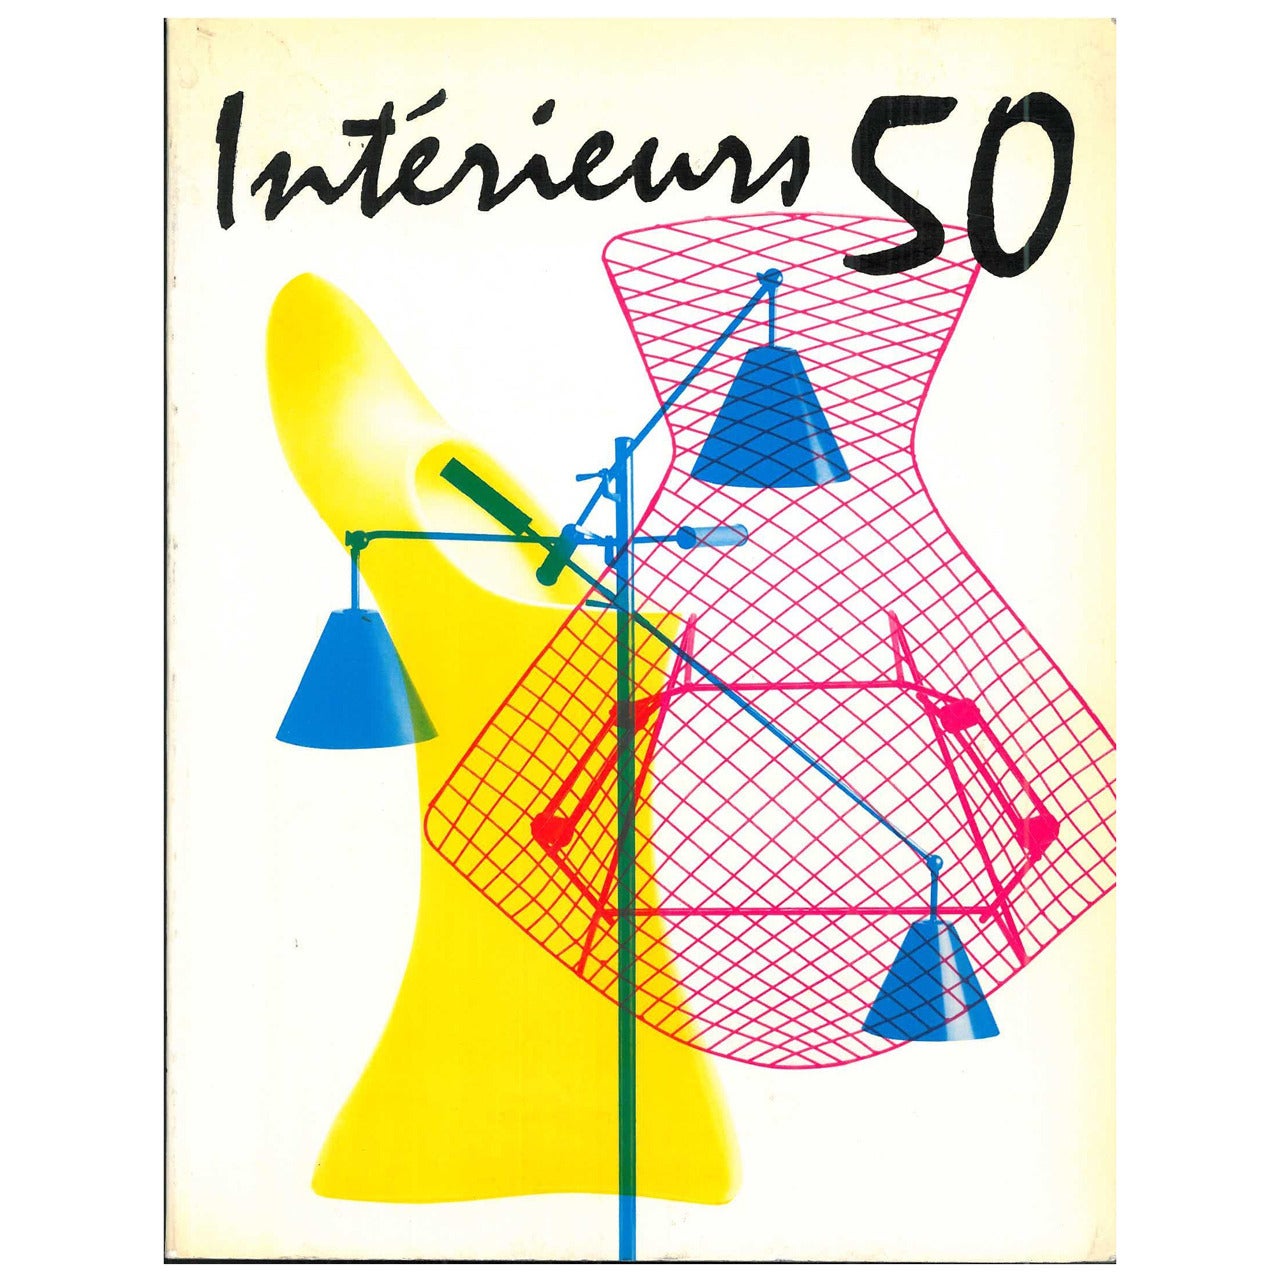 Interieurs 50 (livre) en vente